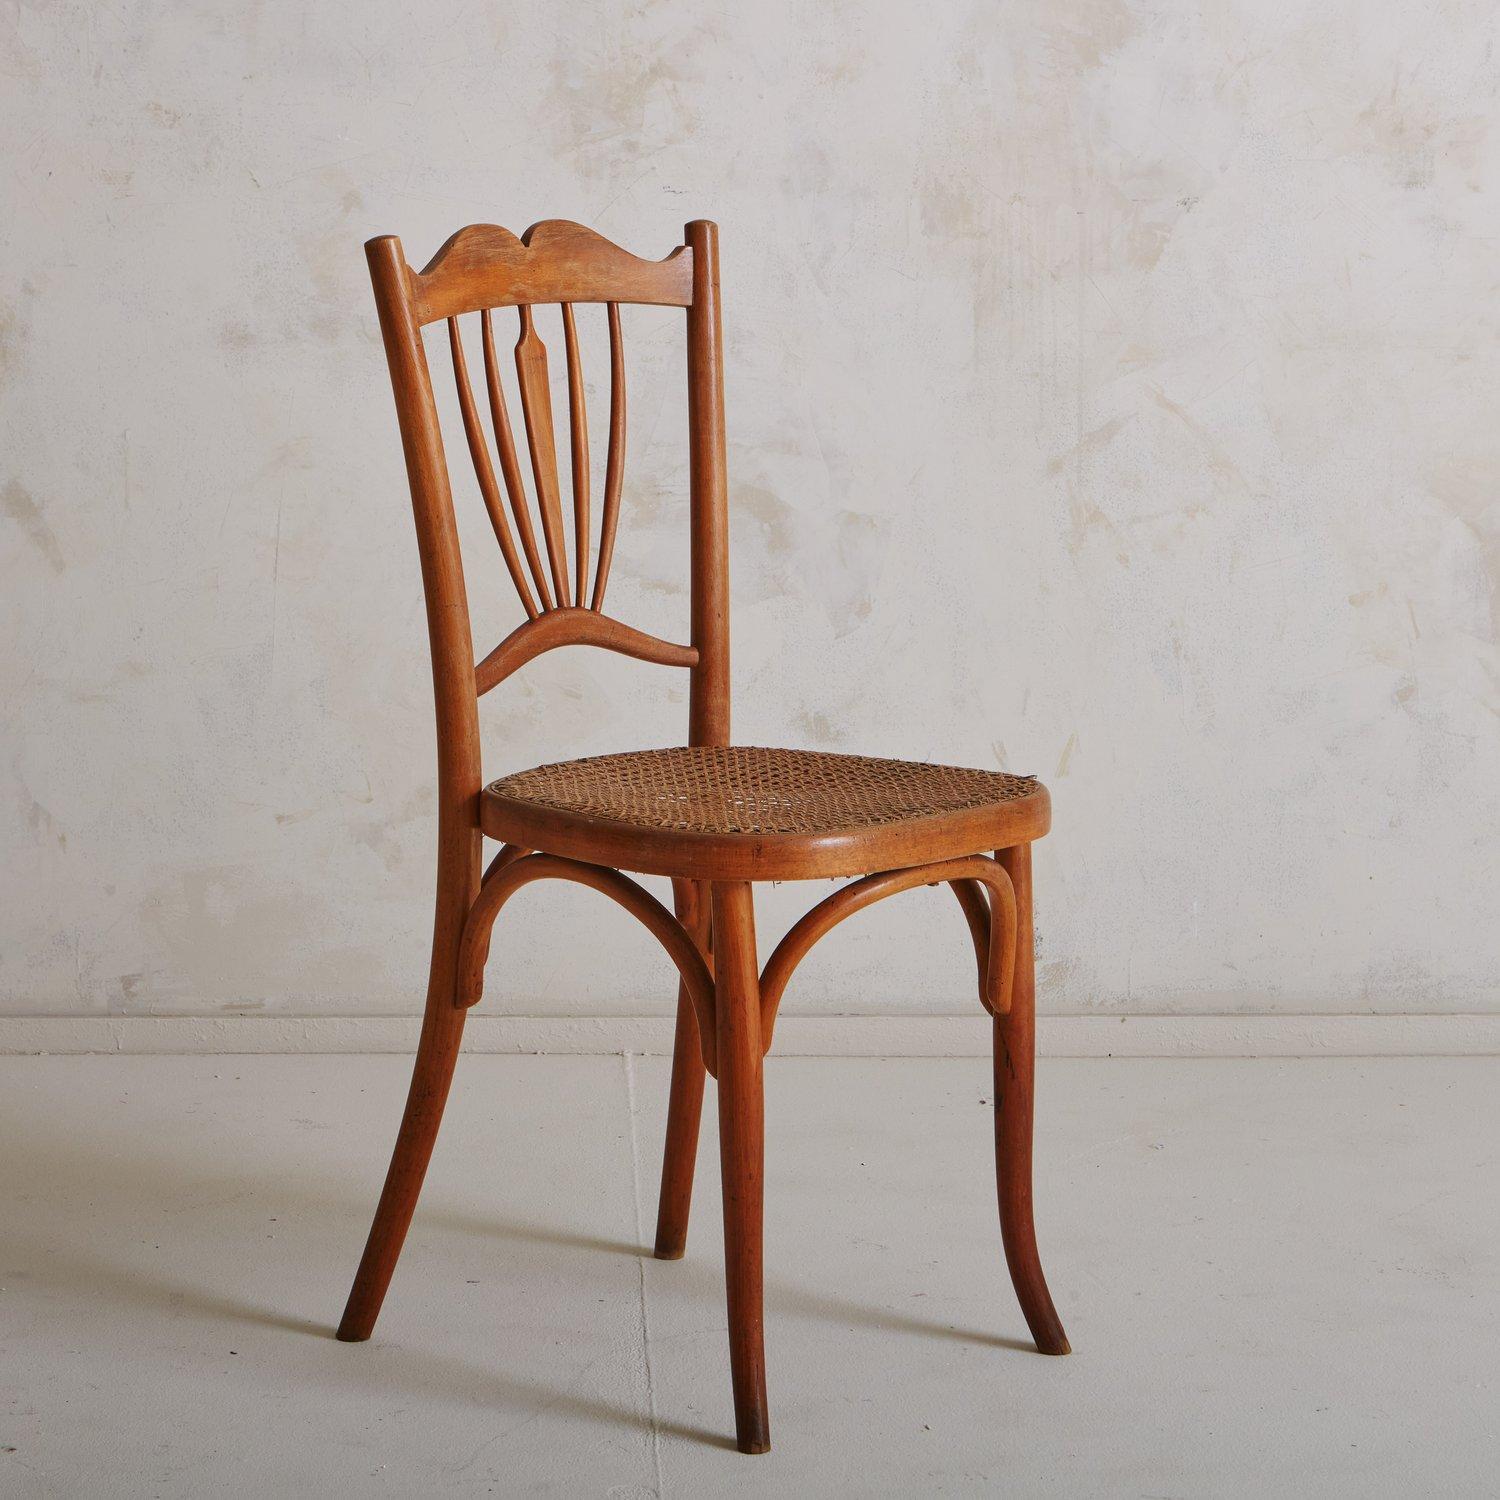 Ein Fischel zugeschriebener Vintage-Stuhl mit einem geschnitzten Holzrahmen, einer aufwändig verzierten Rückenlehne und einer Sitzfläche aus Schilfrohr. Dieses Stück ist im Fischel-Katalog Nr. 150 dokumentiert. Hergestellt in Frankreich, Anfang